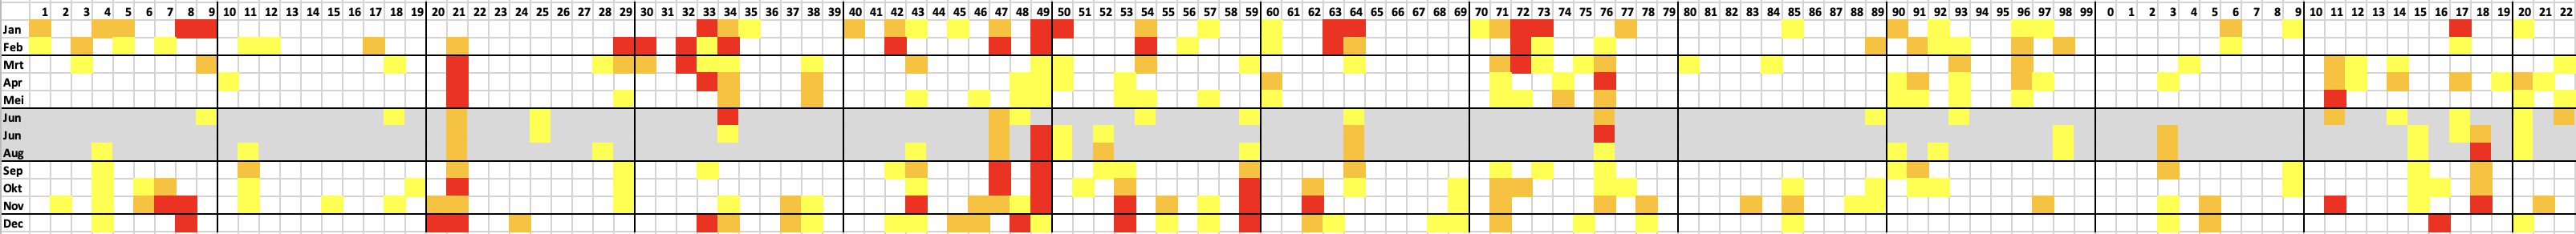 Maanden in de hele meetreeks van de Rijn (1901 is links, 2022 is rechts) met lage tot zeer lage afvoeren: rood = < 50%, oranje tussen 50 en 60% en geel tussen 60 en 70% van het langjarig gemiddelde.